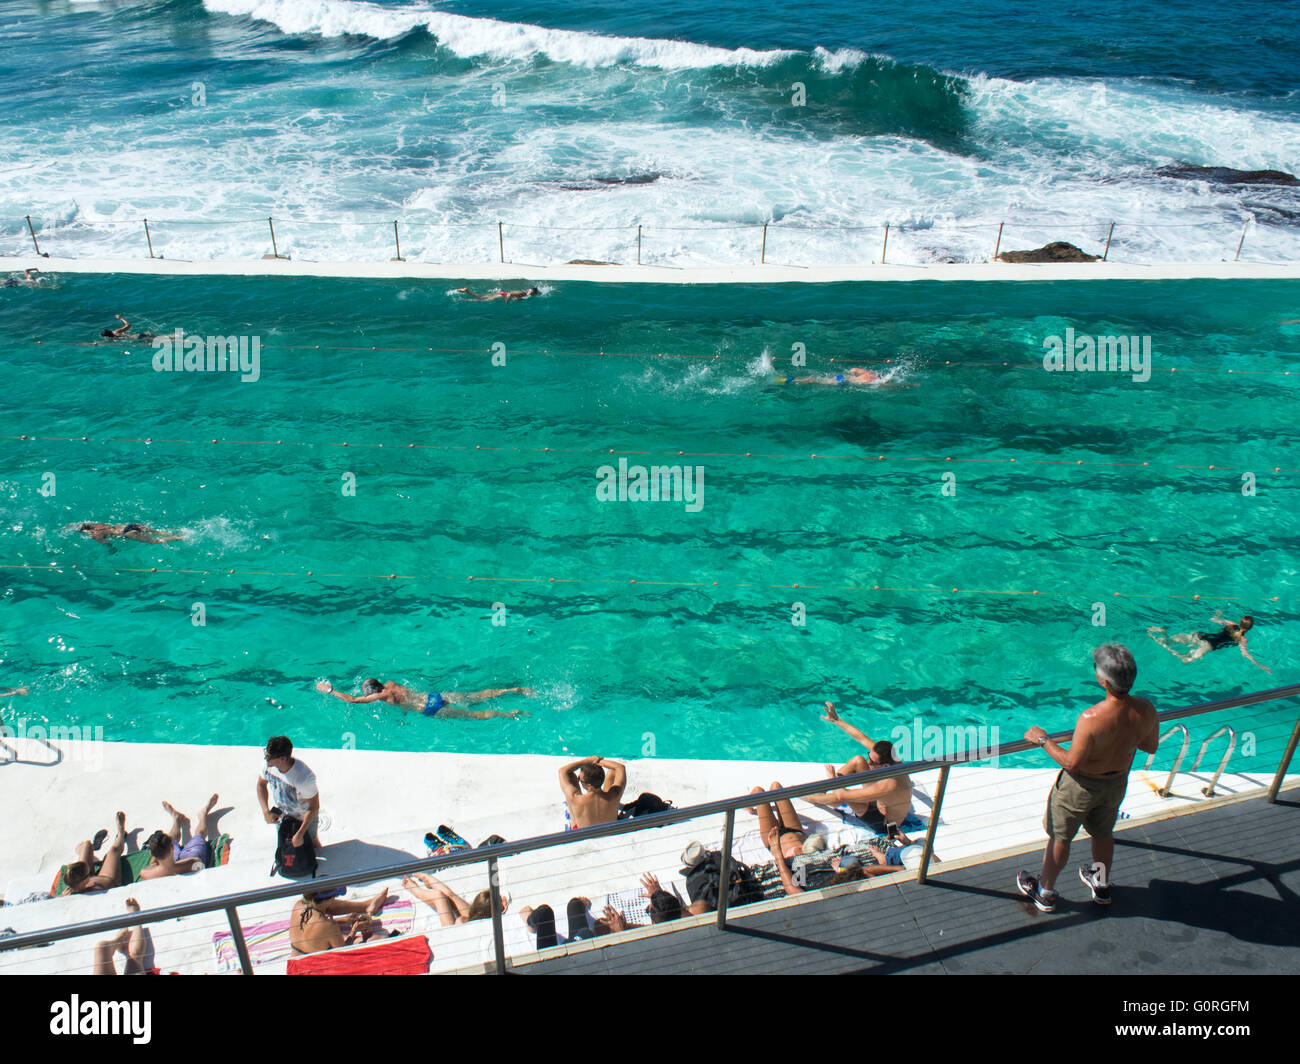 La natation de personnes dans la piscine à Bondi Icebergs de Bondi Beach. Banque D'Images